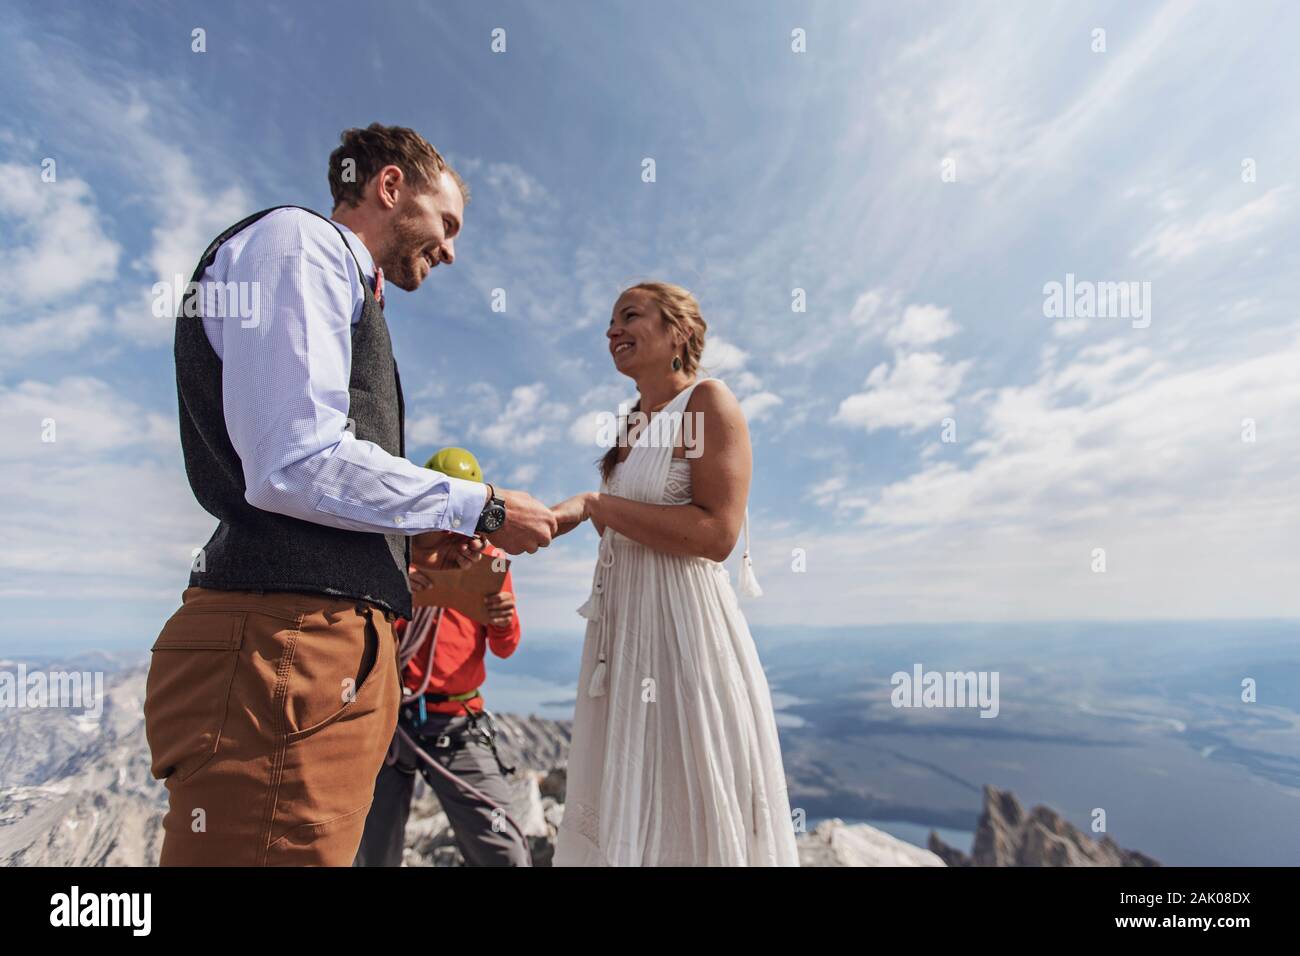 Paare tauschen Gelübde und Ringe während der Hochzeit auf dem Gipfel des  Berges Stockfotografie - Alamy